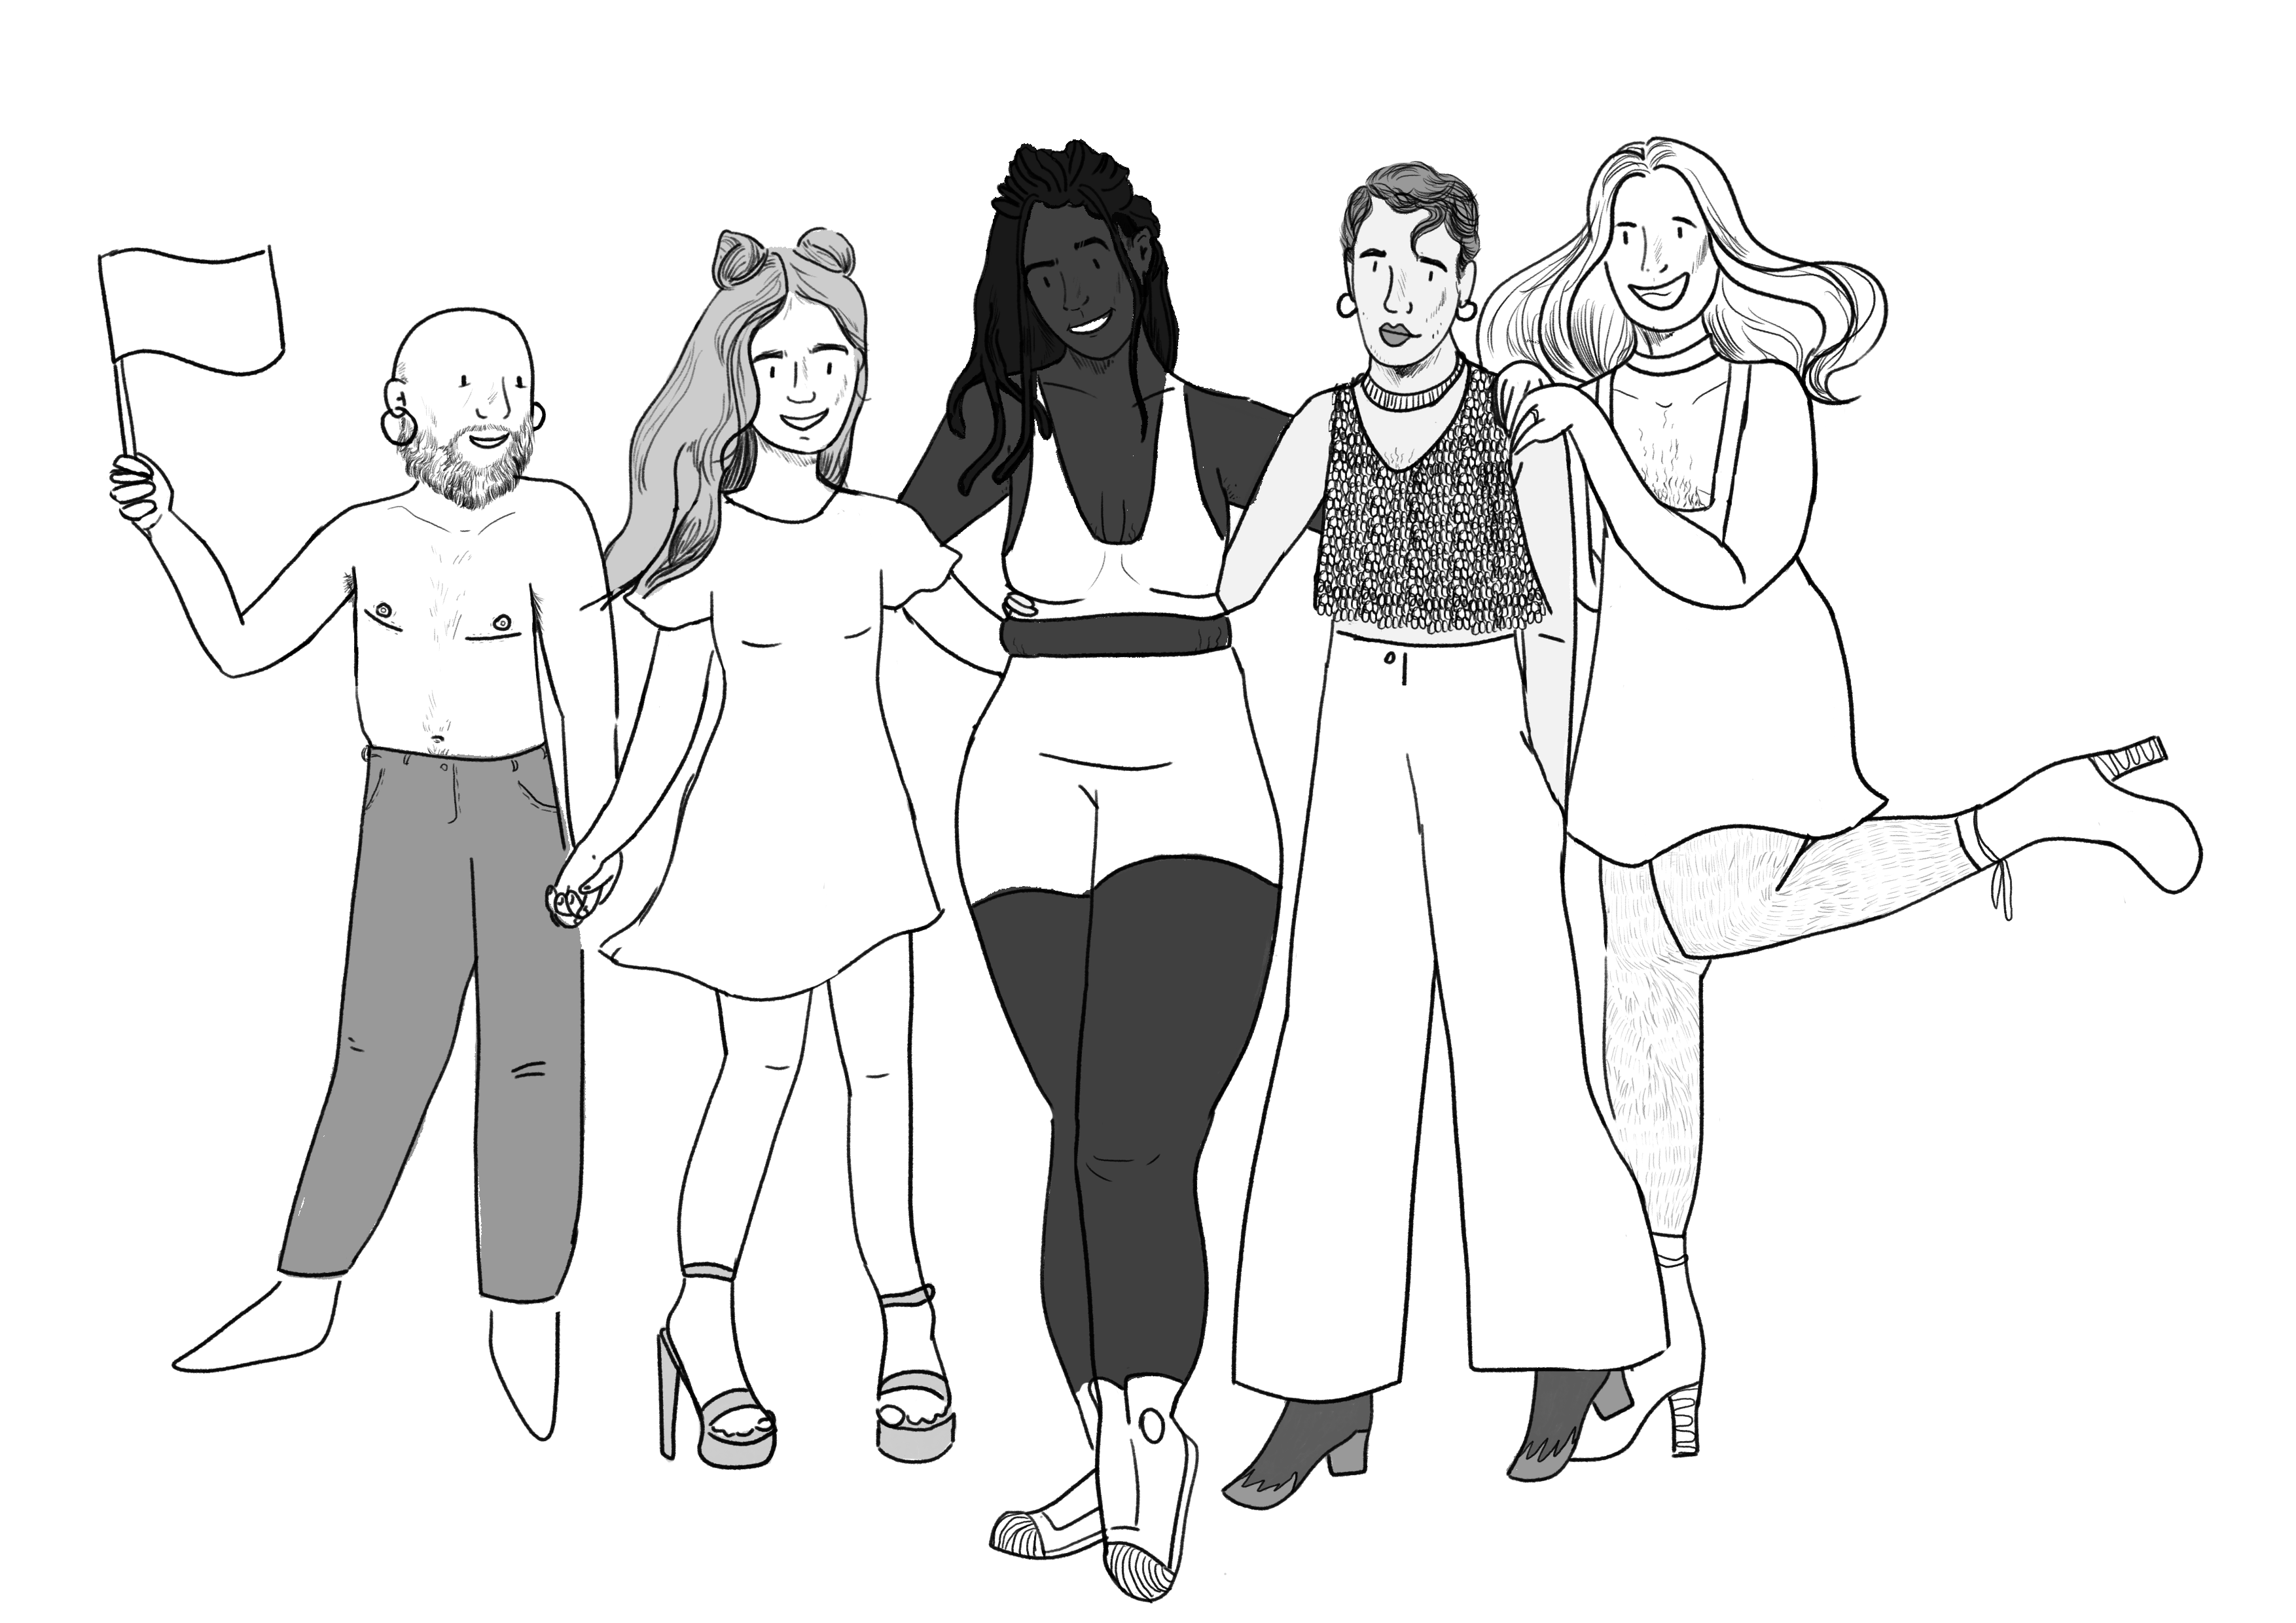 Illustratie:een groep vrolijke en blije personen. Ze hebben elk een zeer diverse genderexpressie.